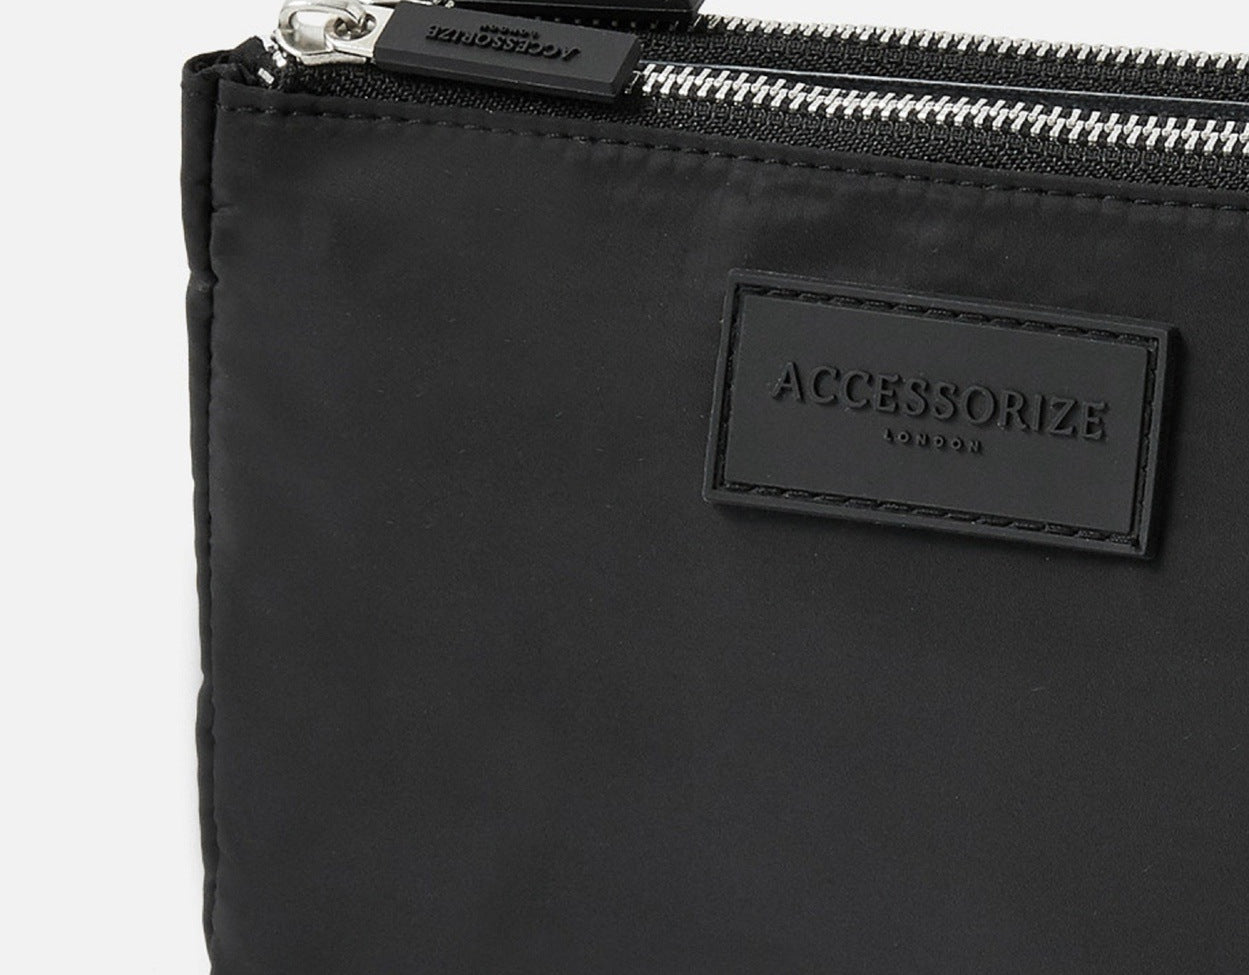 Accessorize London Women's Faux Leather Black Double Zip Pouch